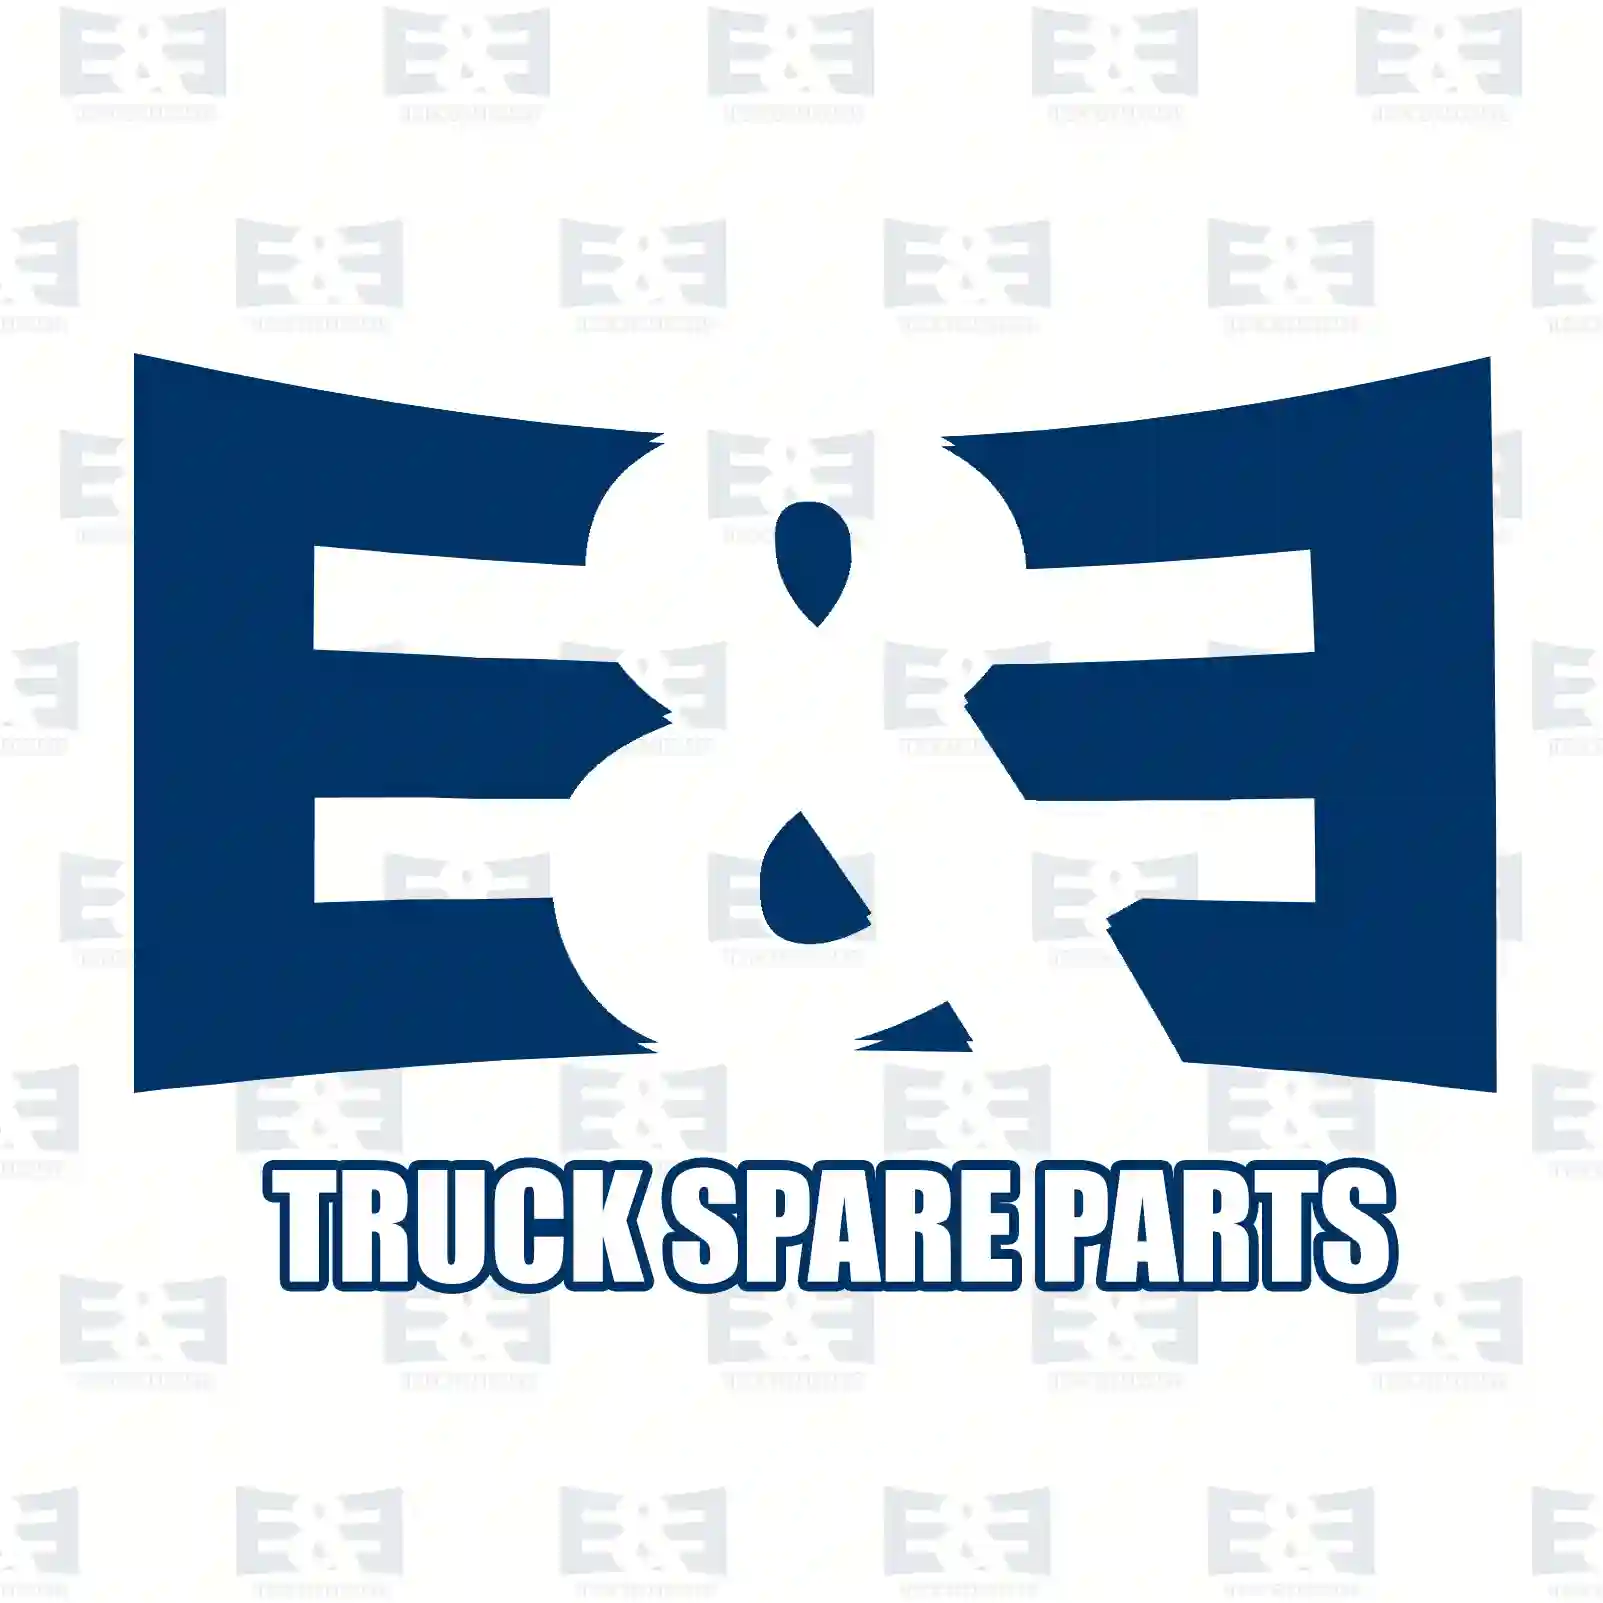 Overhaul kit, 2E2206012, 85115179 ||  2E2206012 E&E Truck Spare Parts | Truck Spare Parts, Auotomotive Spare Parts Overhaul kit, 2E2206012, 85115179 ||  2E2206012 E&E Truck Spare Parts | Truck Spare Parts, Auotomotive Spare Parts